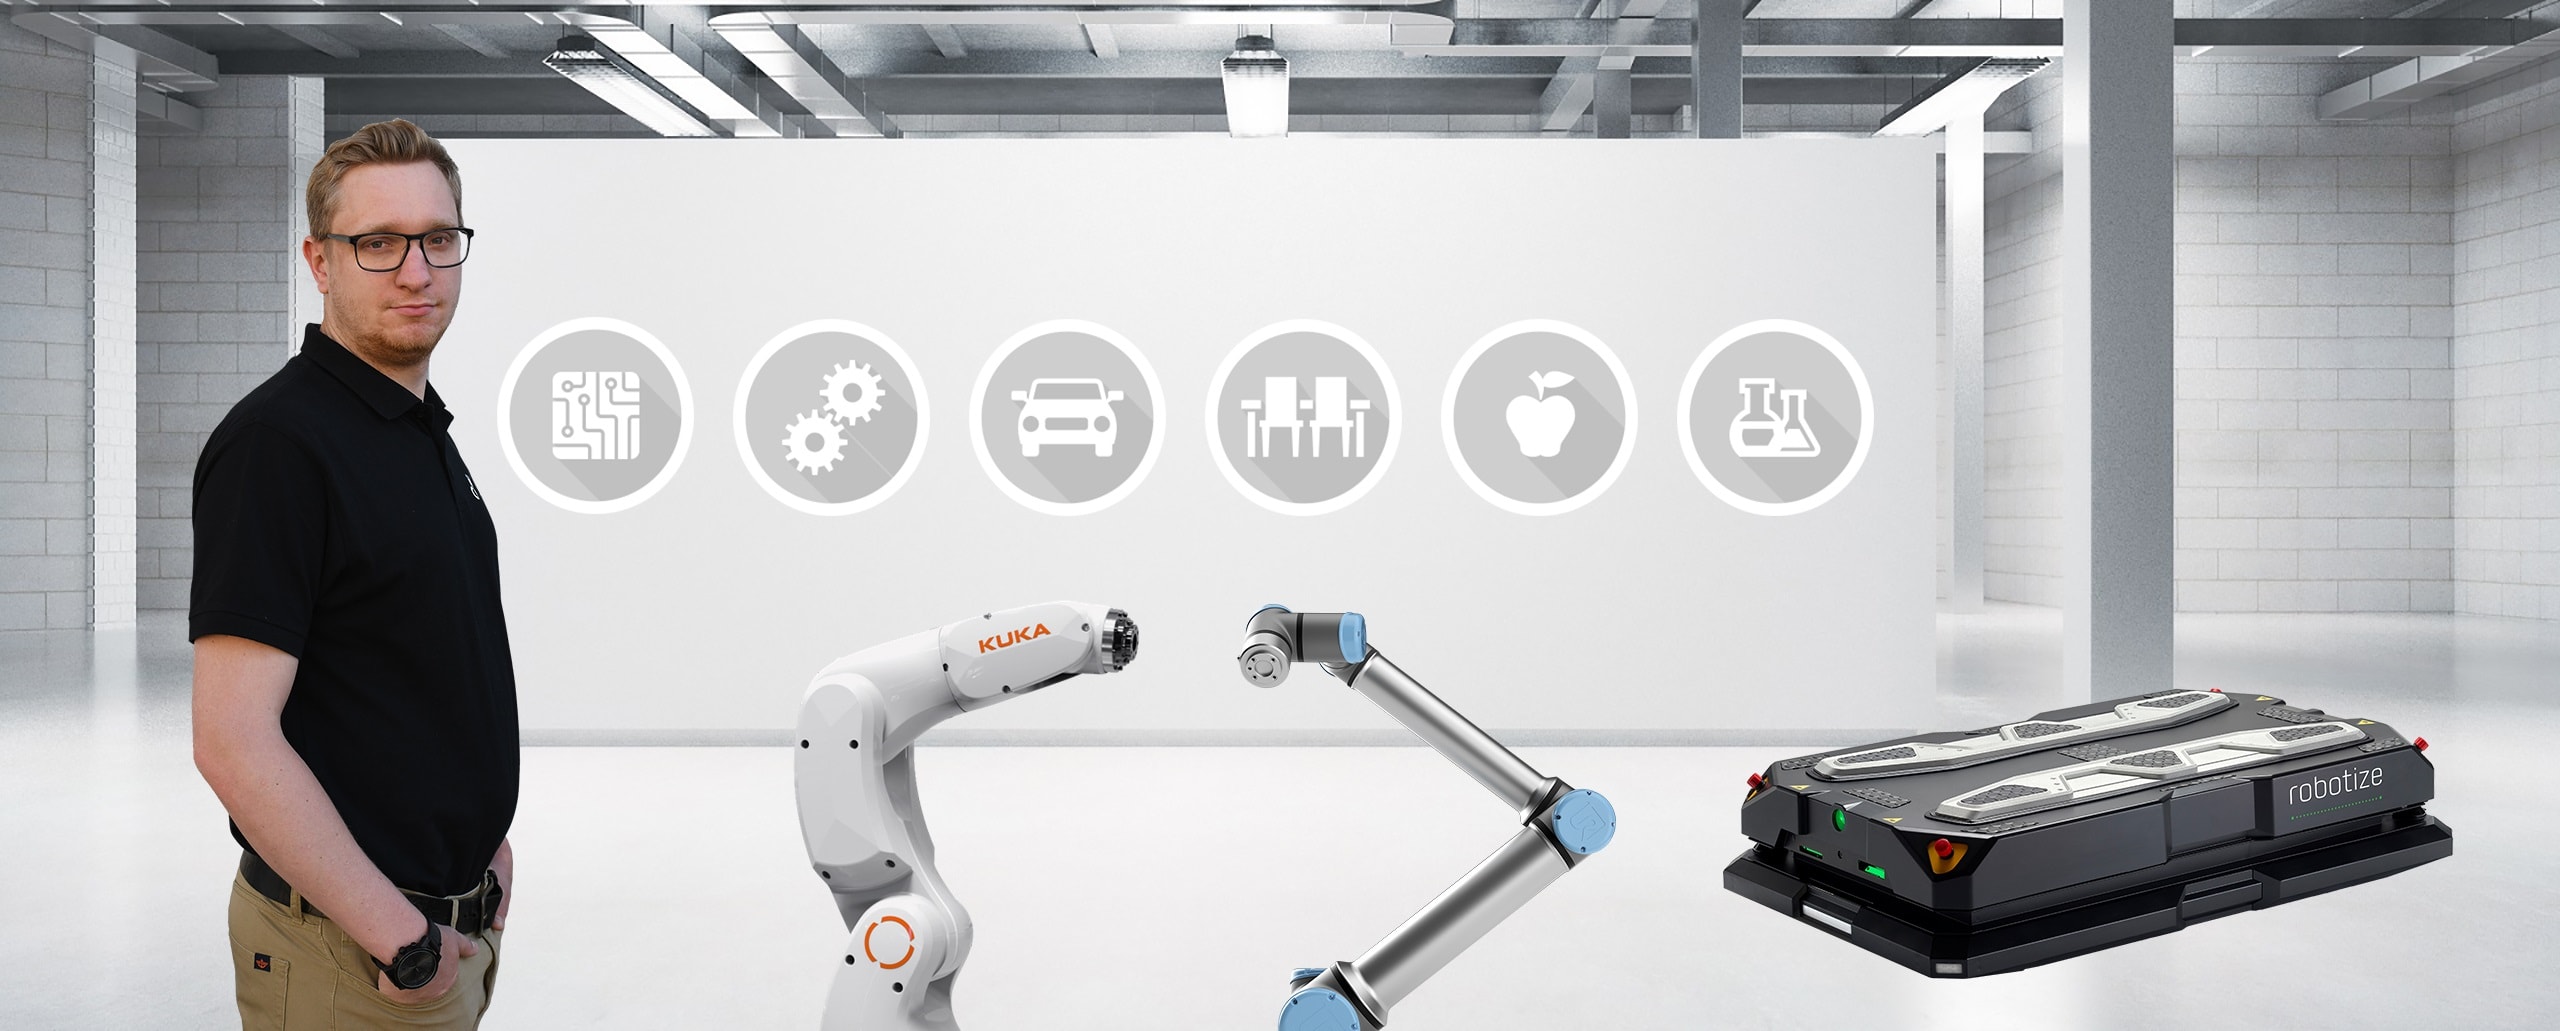 Einfache Automatisierung für KMU: Mit den Bausteinen unserer kollaborierenden Automatisierungstechnik. Vom Industrie-Roboter über Roboter-Peripherie bis hin zum integrierten Anlagenbau.